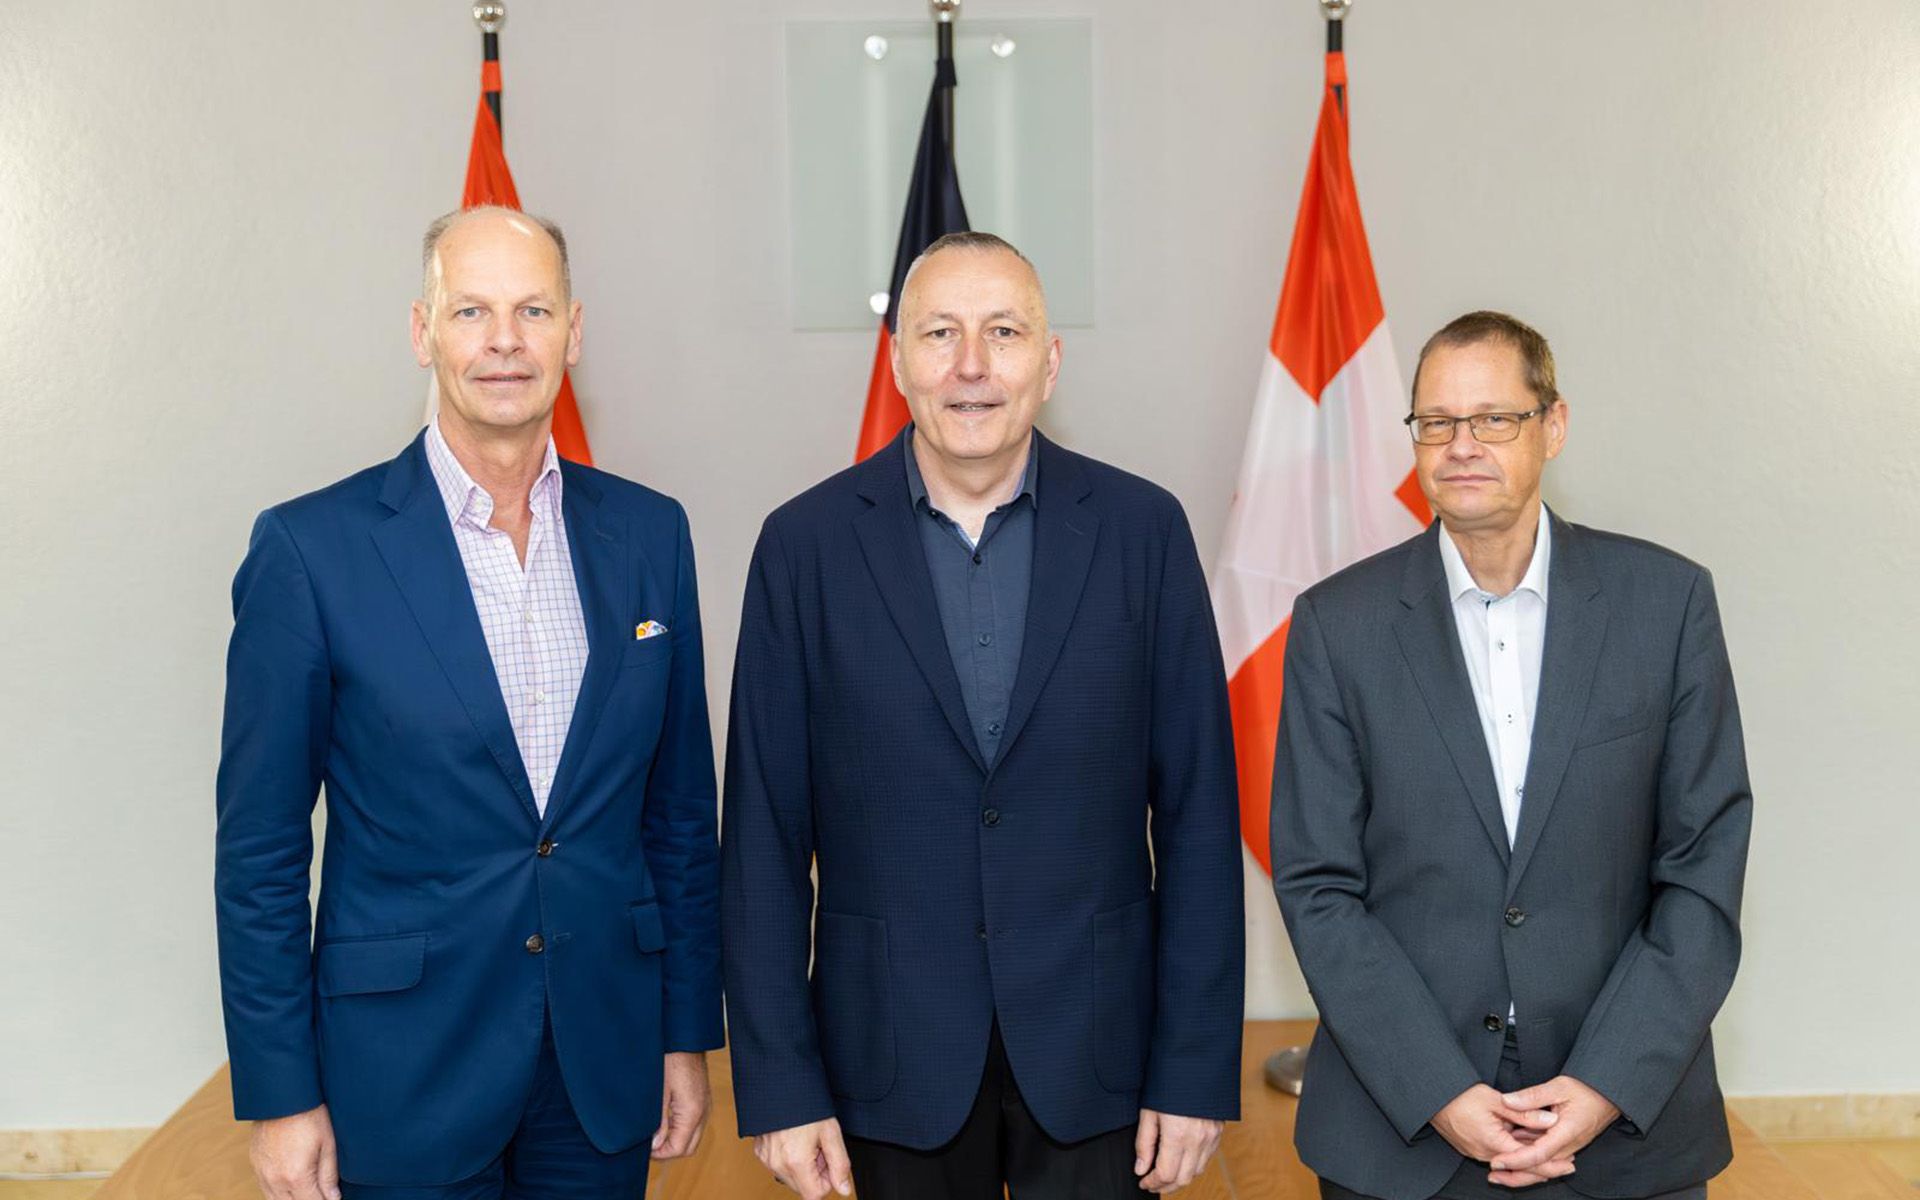 Bild der Rüstungschefen von Österreich, Deutschland und der Schweiz. Vom links nach rechts: Harald Vodosek (Ö) Carsten Stawitzki (DE) Urs Loher (CH)